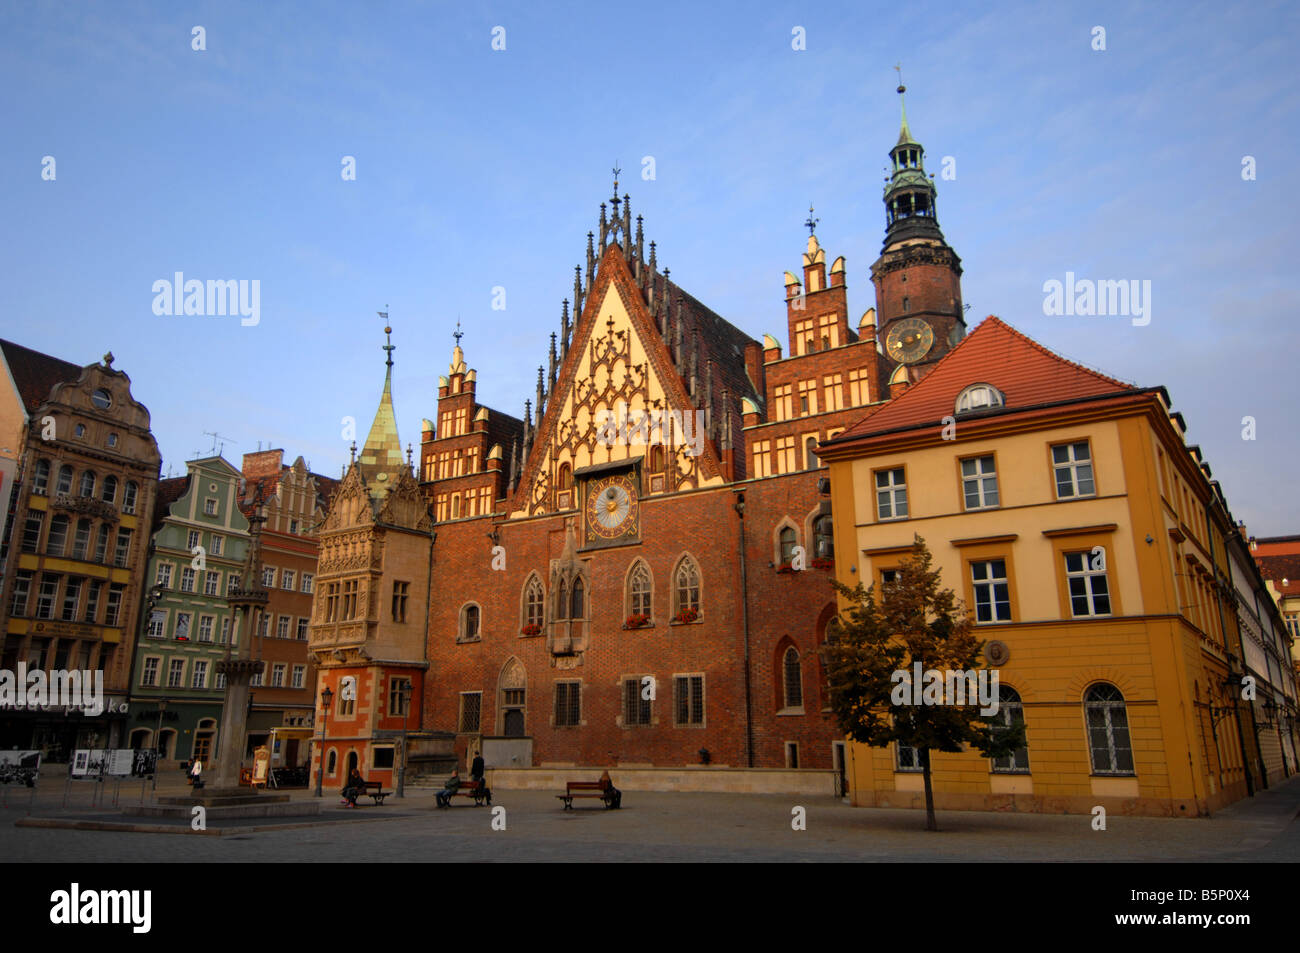 Hôtel de ville, Rynek Square, Wroclaw, Pologne Banque D'Images